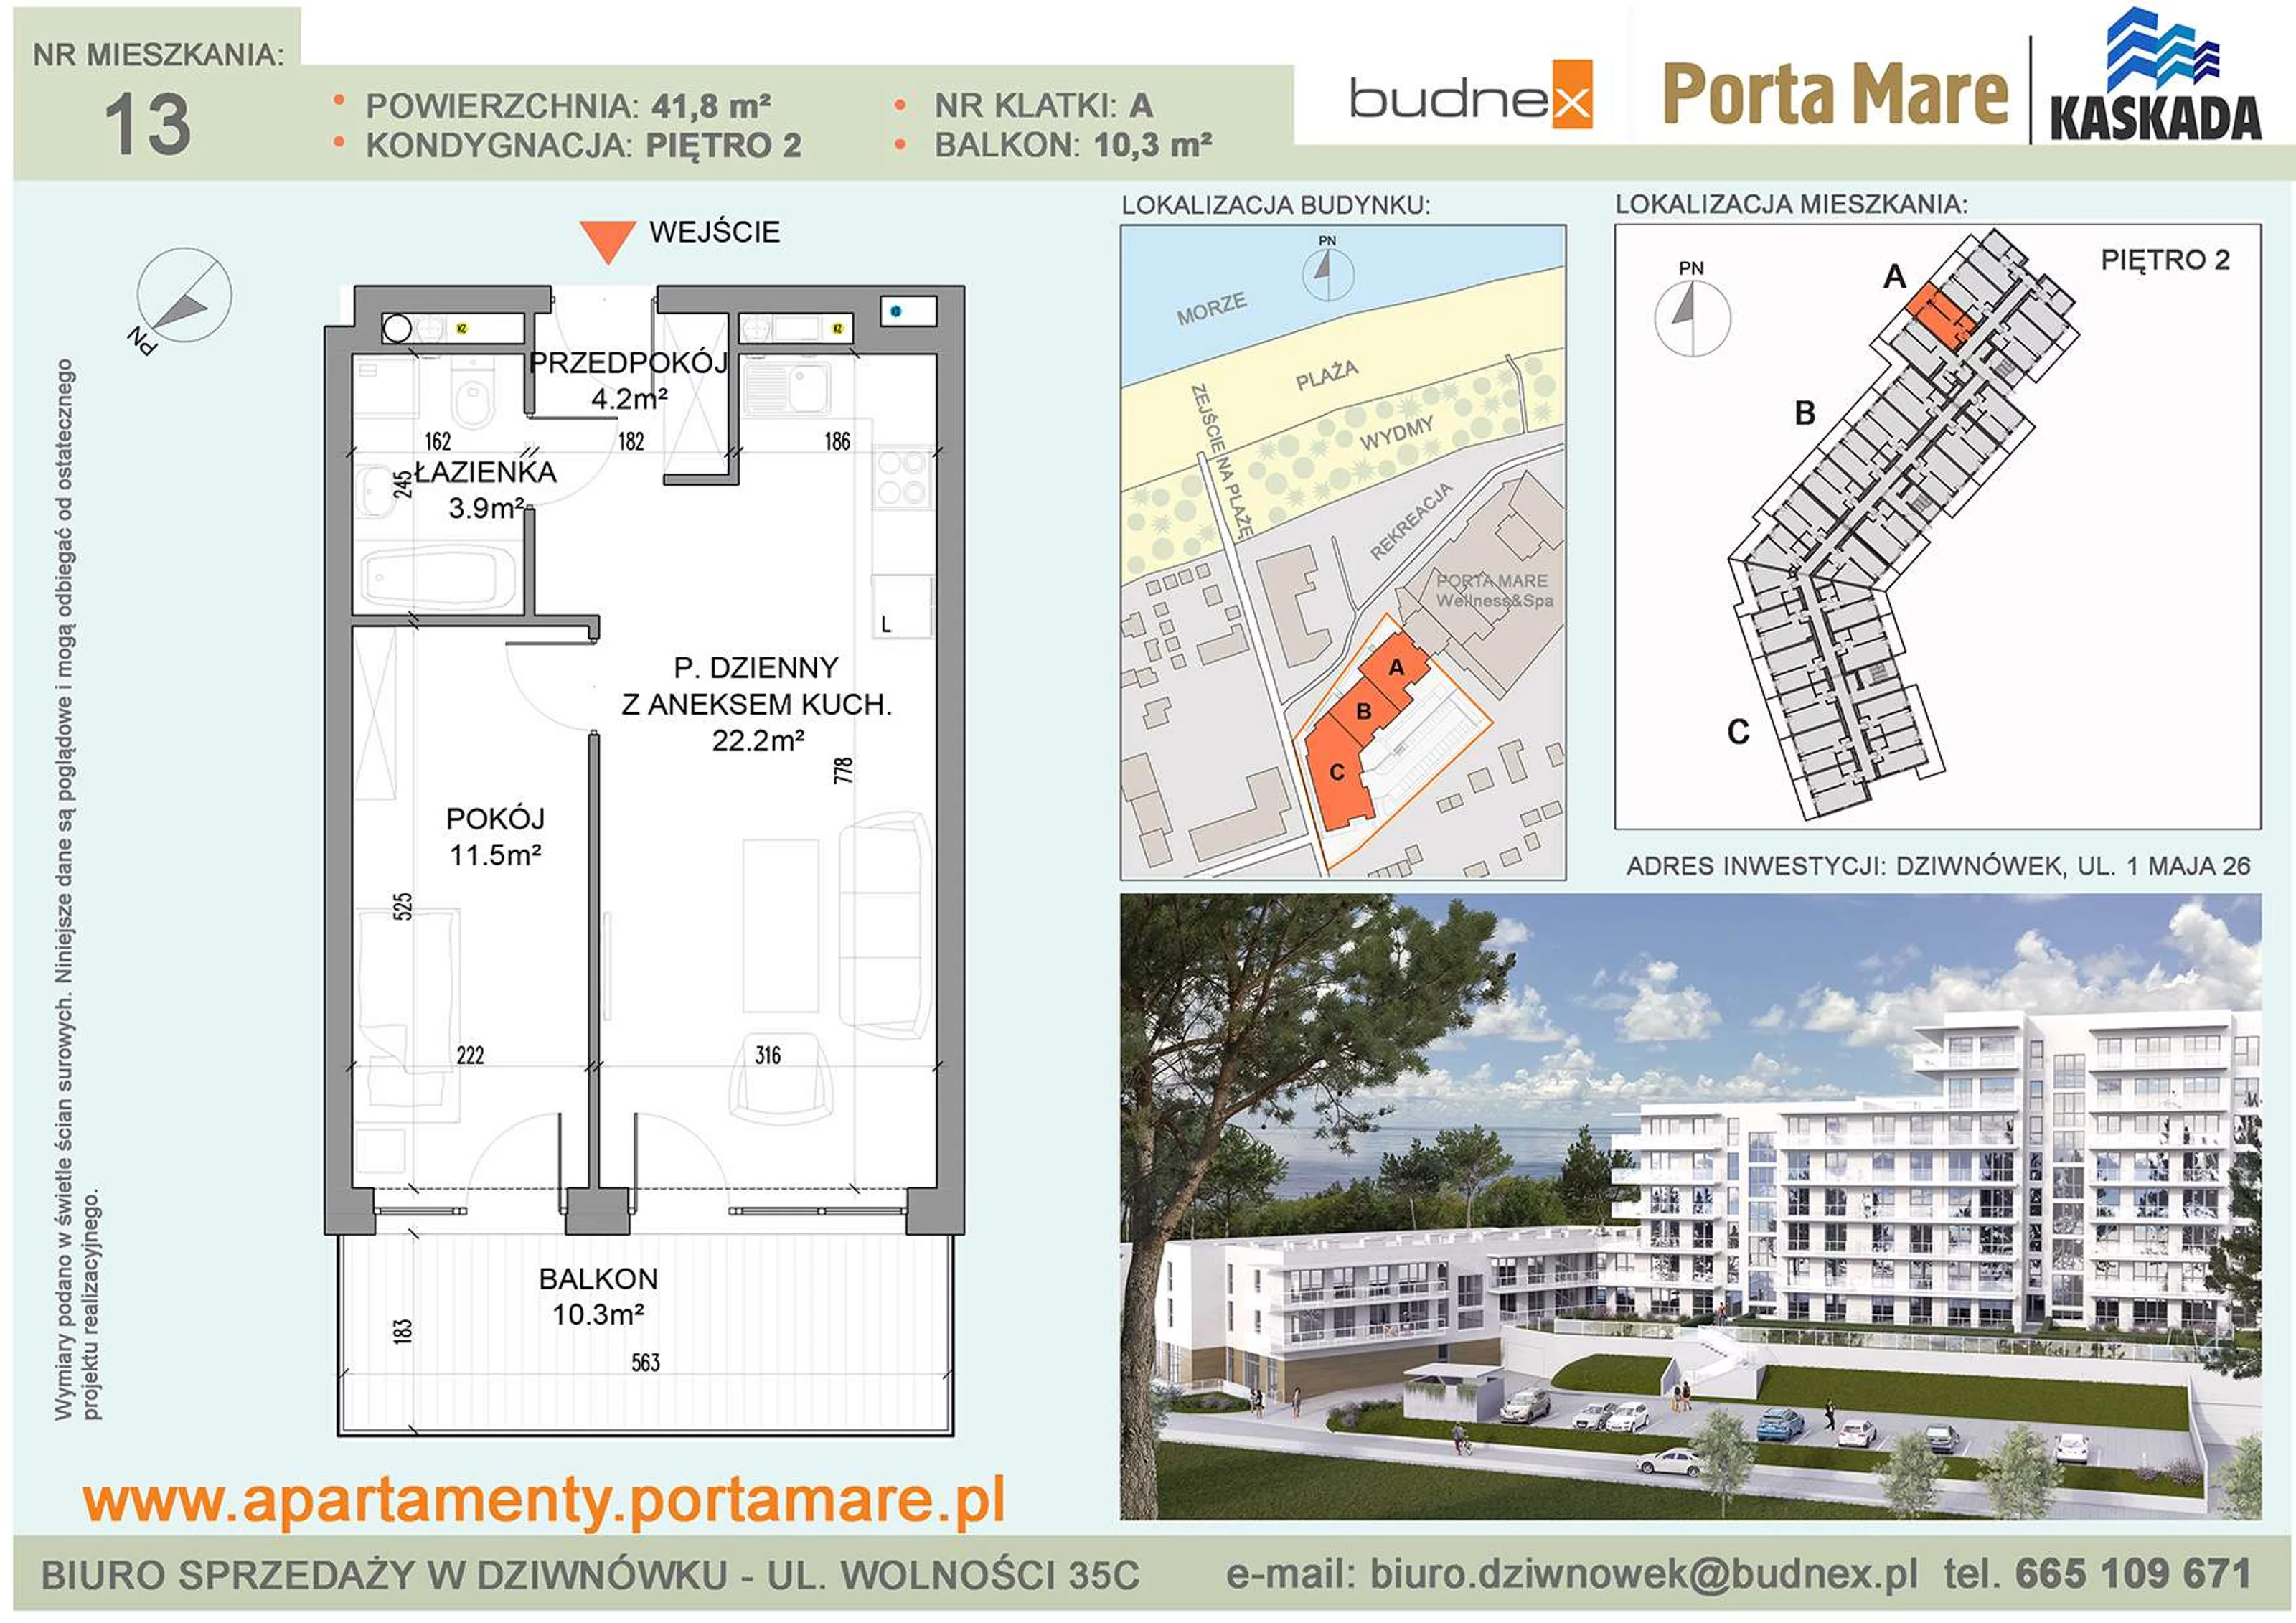 Apartament 41,80 m², piętro 2, oferta nr A/M13, Porta Mare Kaskada, Dziwnówek, ul. 1 Maja 26